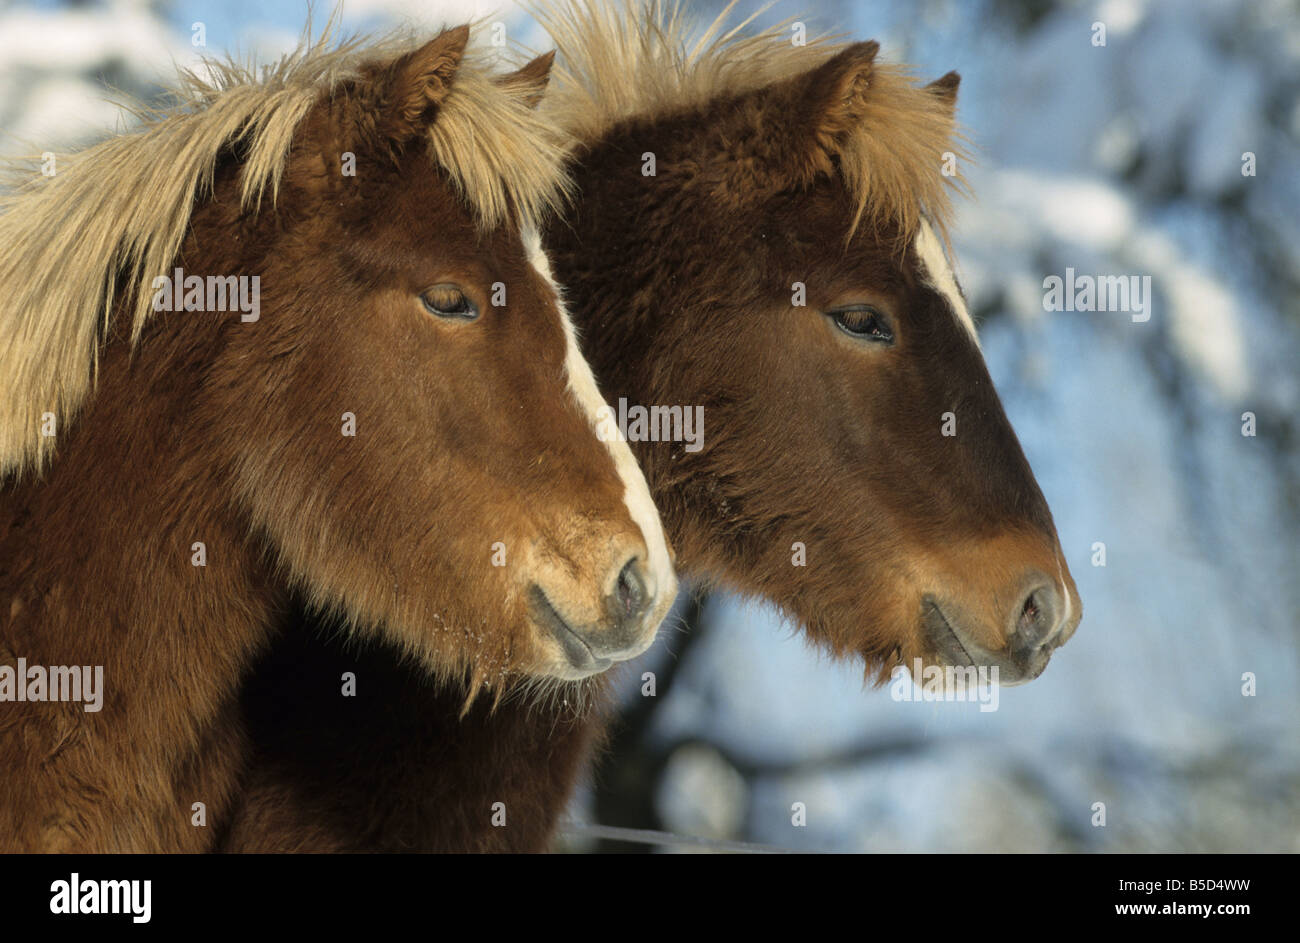 Cavallo islandese (Equus caballus), due individui in cappotto invernale su un prato Foto Stock